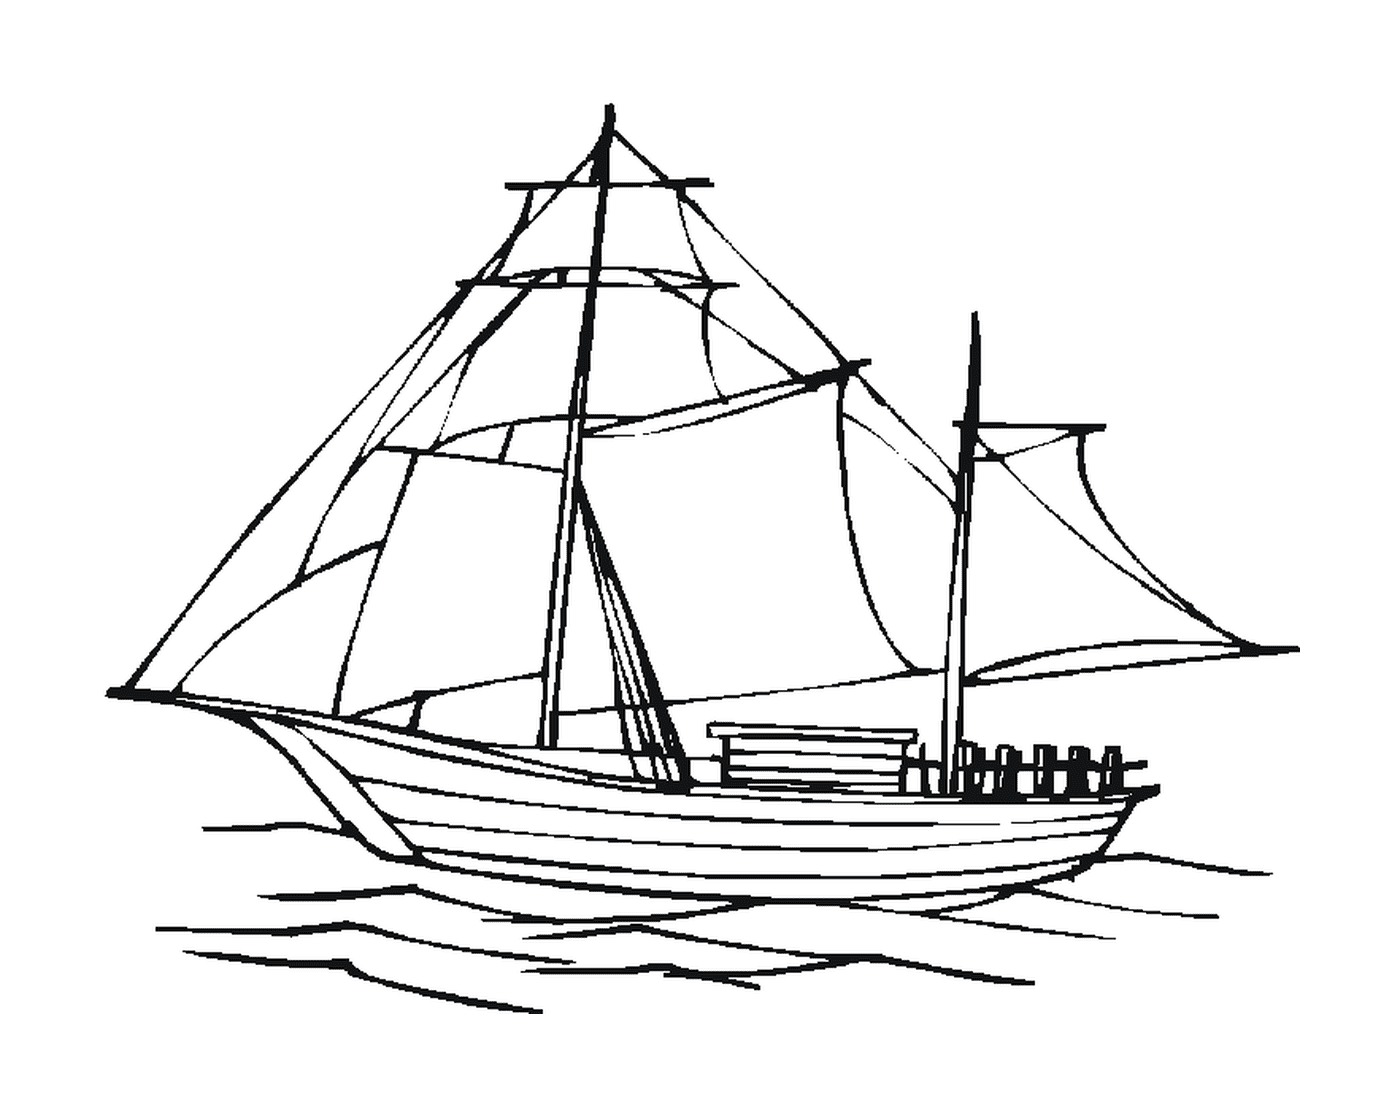  Una barca a vela che galleggia su una distesa d'acqua 